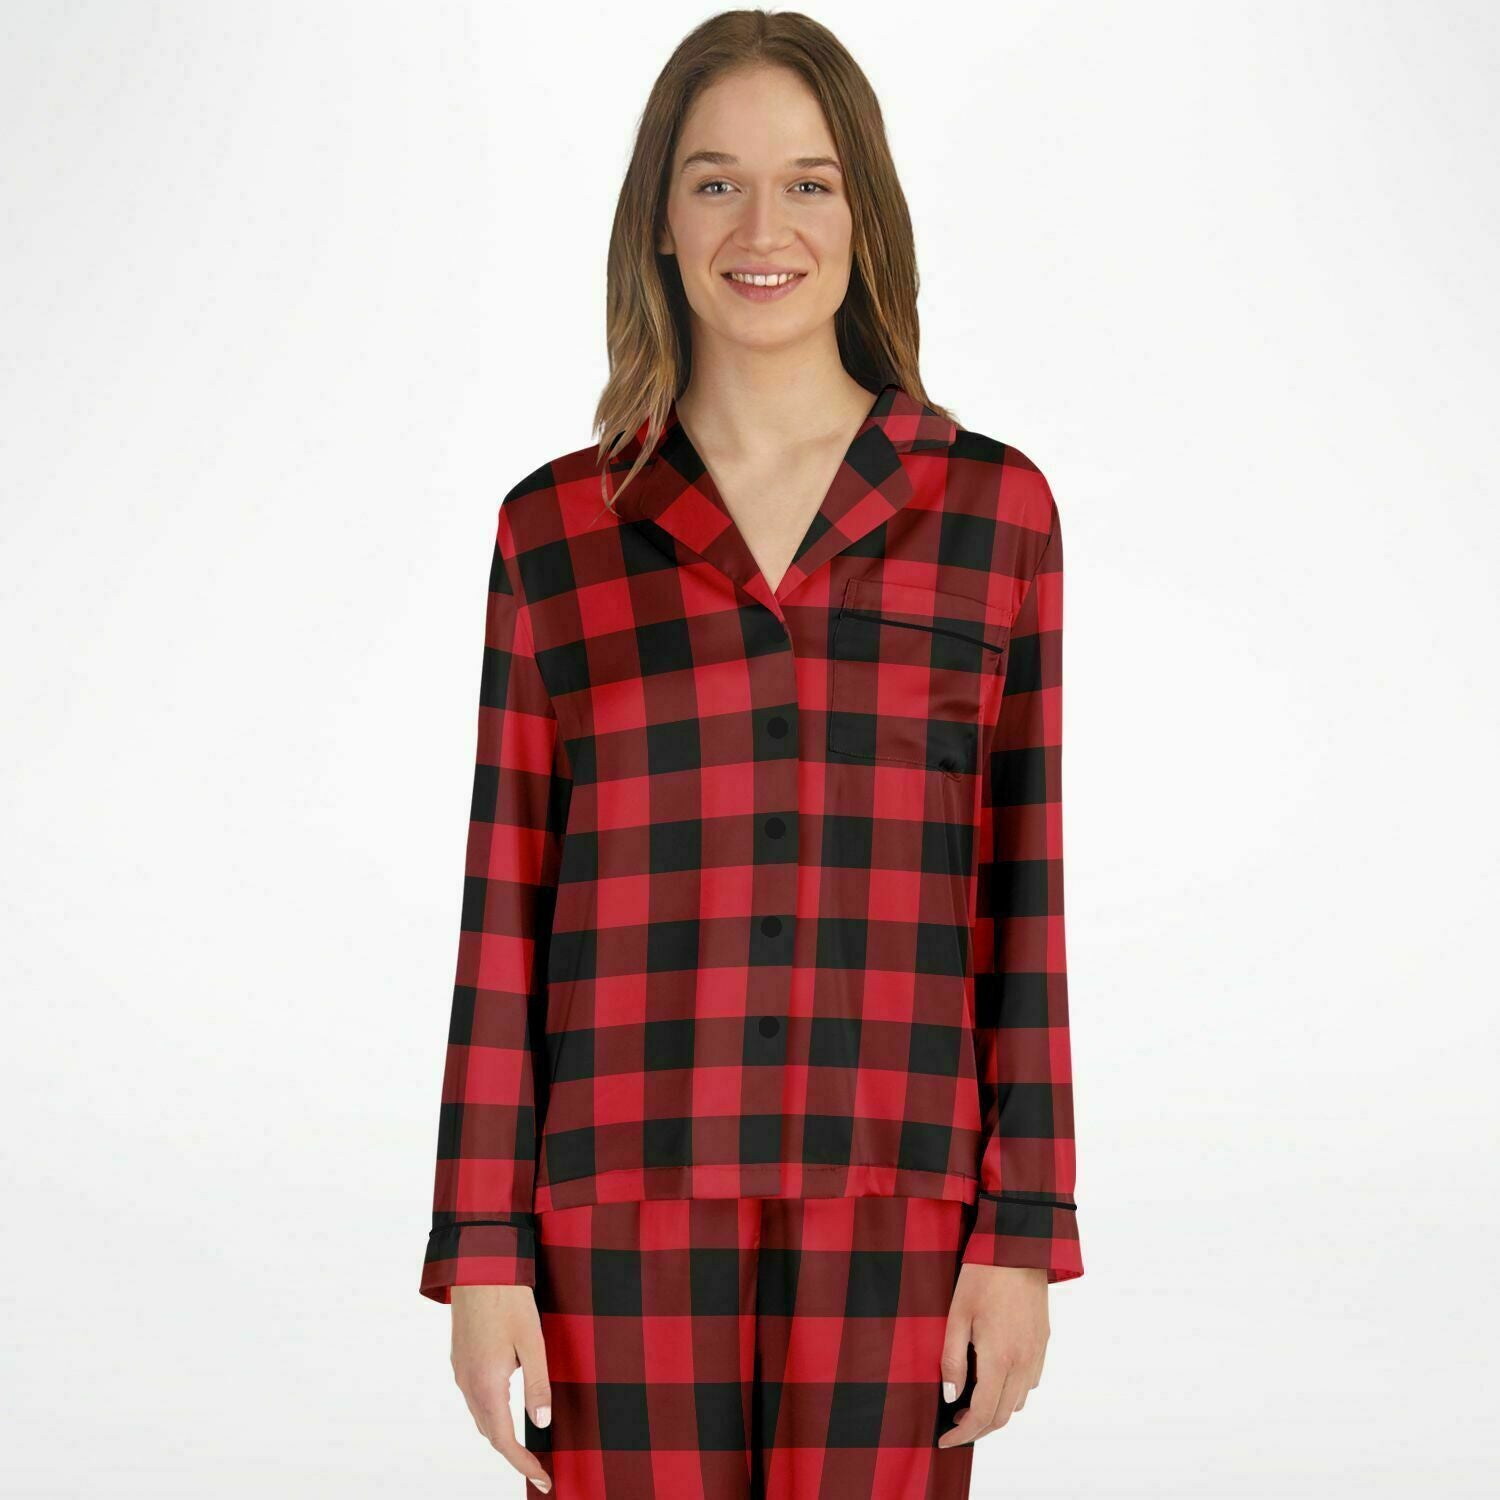 Plaid Pajamas - Red/plaid - Ladies